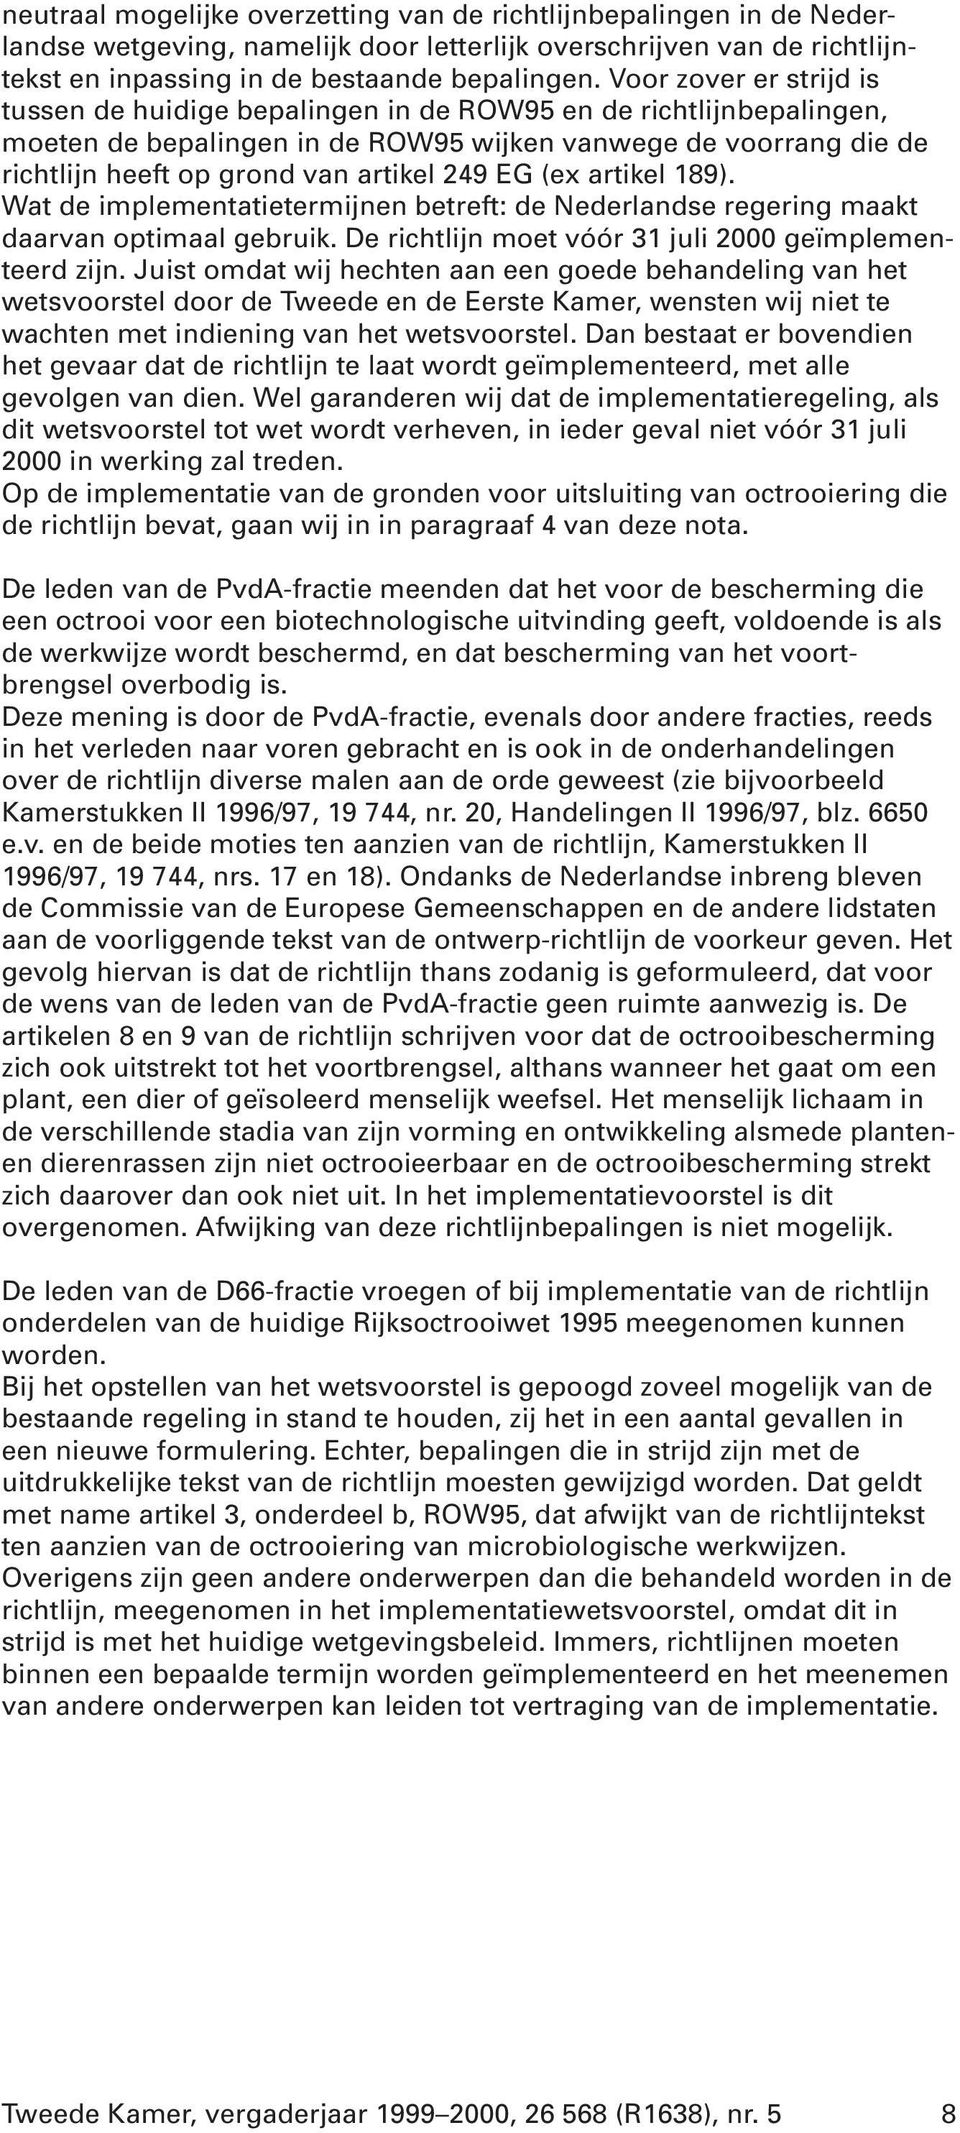 EG (ex artikel 189). Wat de implementatietermijnen betreft: de Nederlandse regering maakt daarvan optimaal gebruik. De richtlijn moet vóór 31 juli 2000 geïmplementeerd zijn.